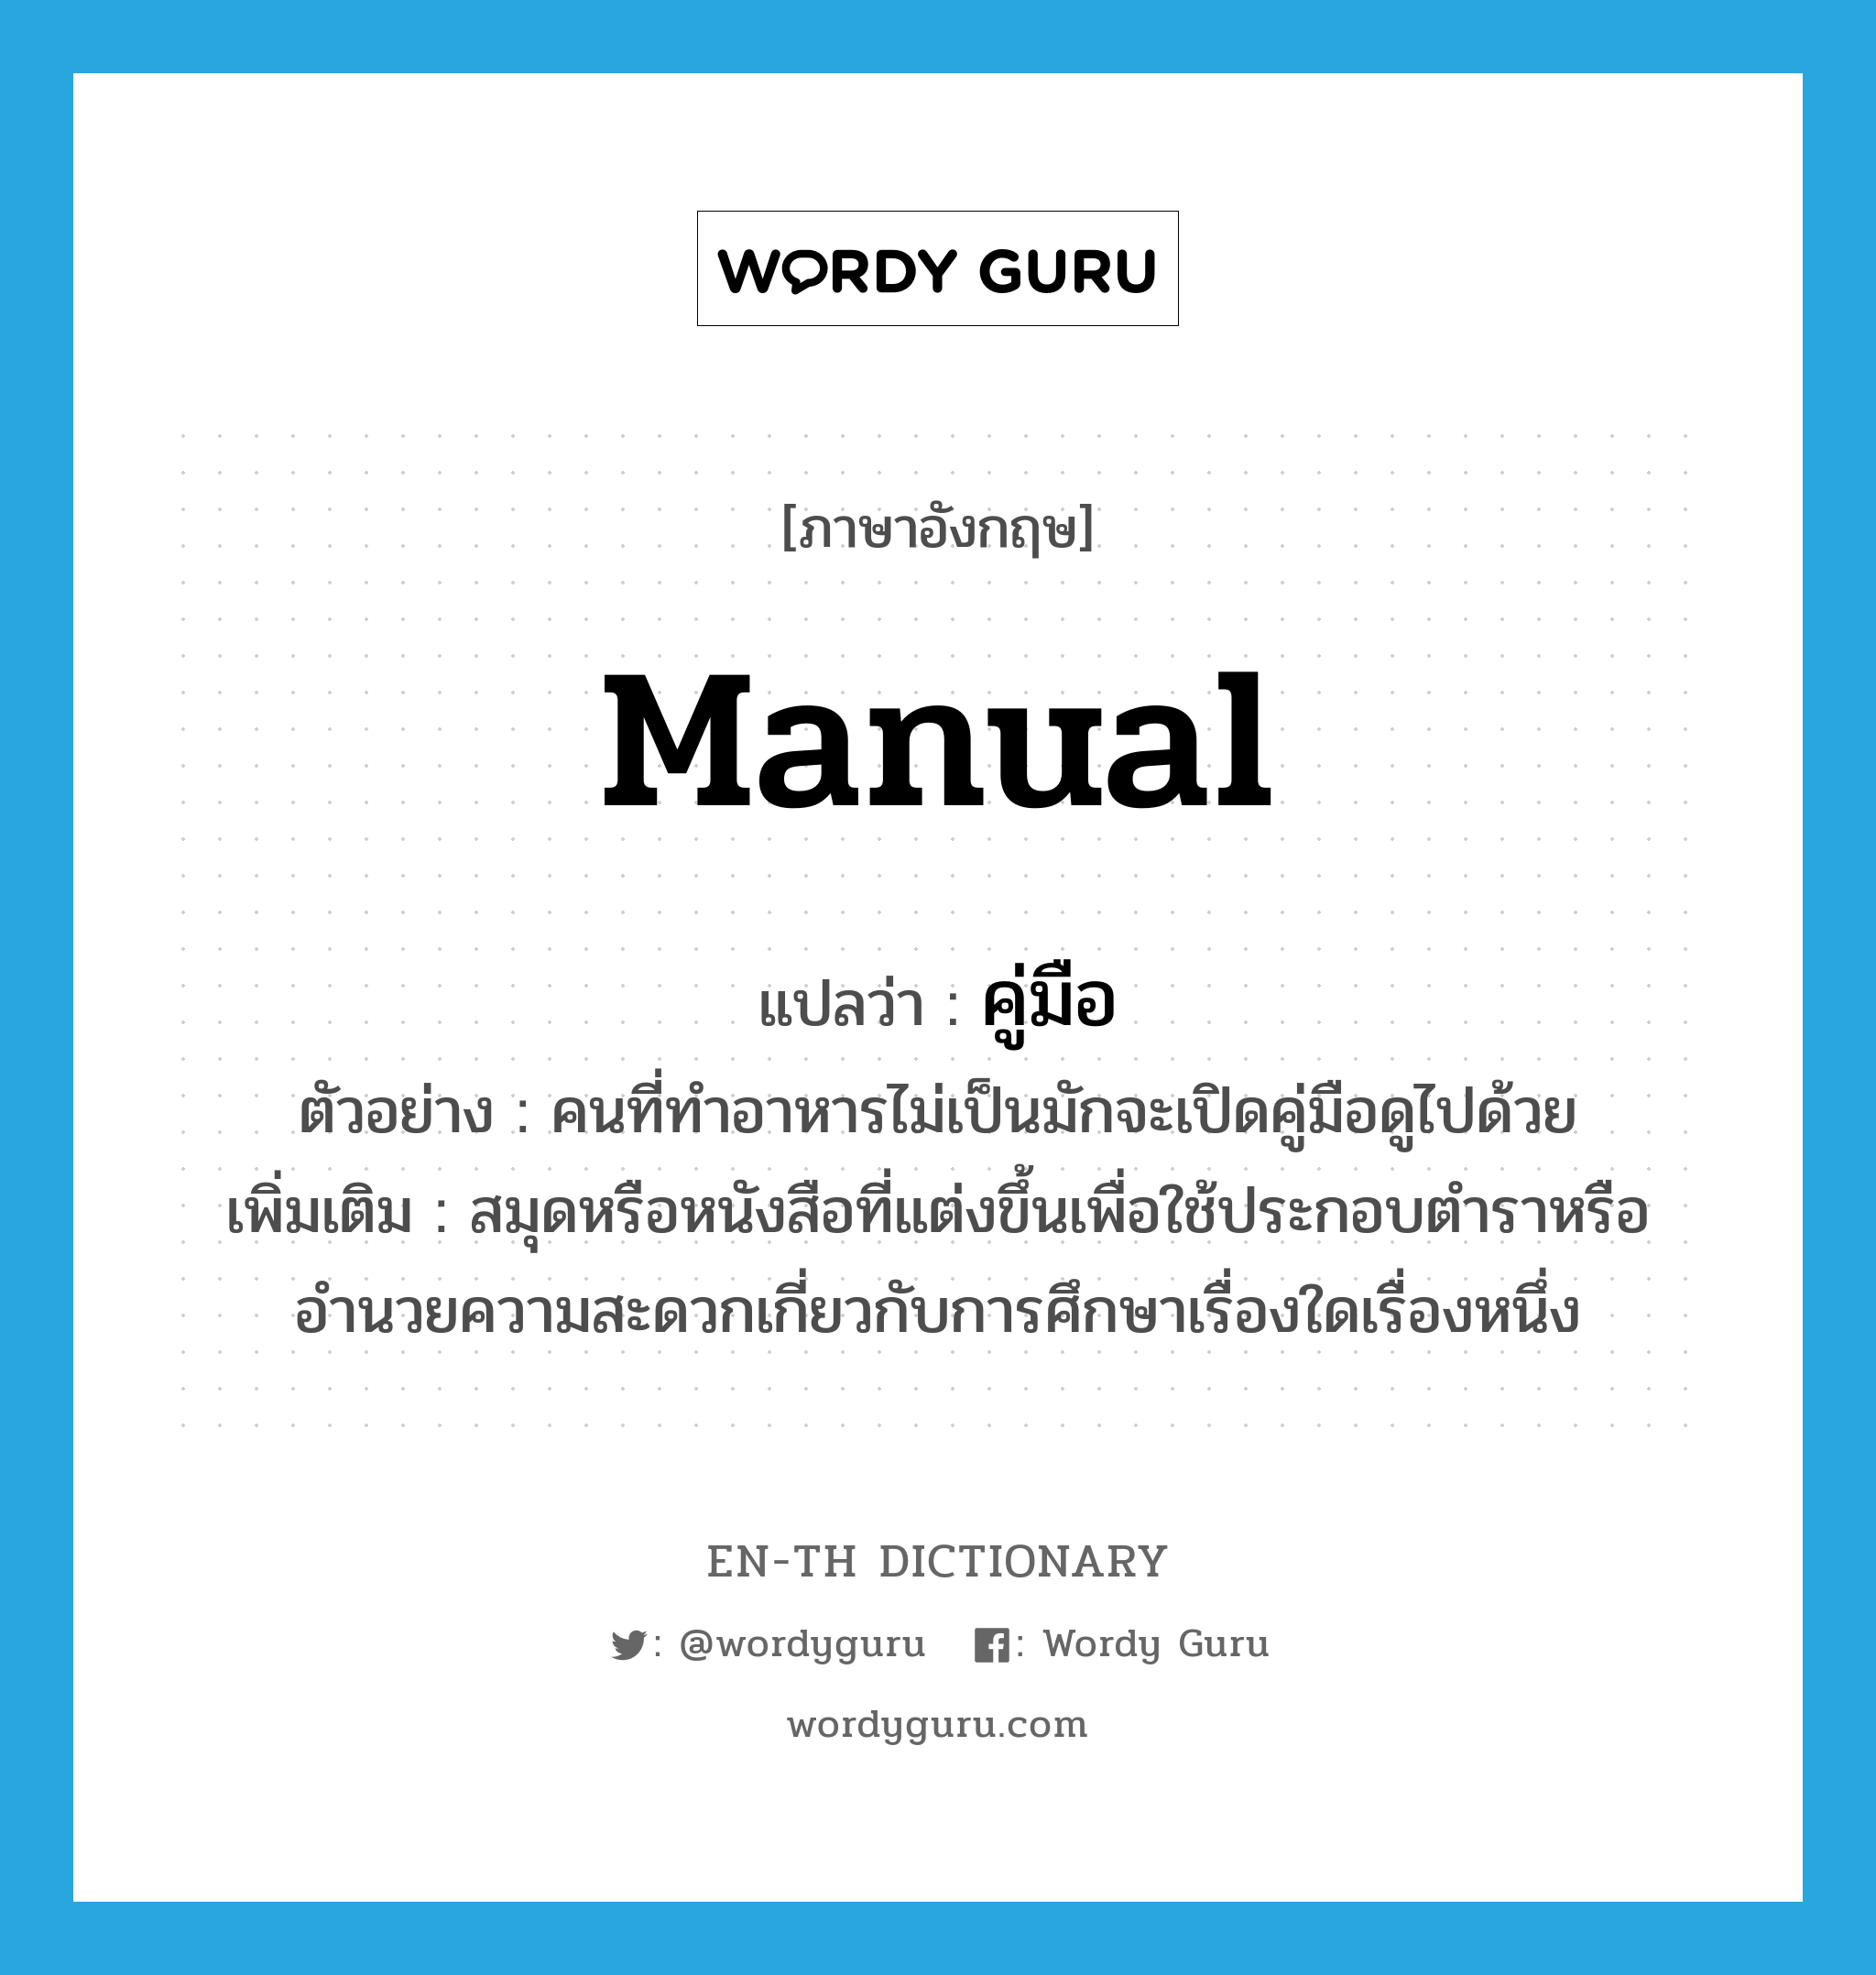 manual แปลว่า?, คำศัพท์ภาษาอังกฤษ manual แปลว่า คู่มือ ประเภท N ตัวอย่าง คนที่ทำอาหารไม่เป็นมักจะเปิดคู่มือดูไปด้วย เพิ่มเติม สมุดหรือหนังสือที่แต่งขึ้นเพื่อใช้ประกอบตำราหรืออำนวยความสะดวกเกี่ยวกับการศึกษาเรื่องใดเรื่องหนึ่ง หมวด N